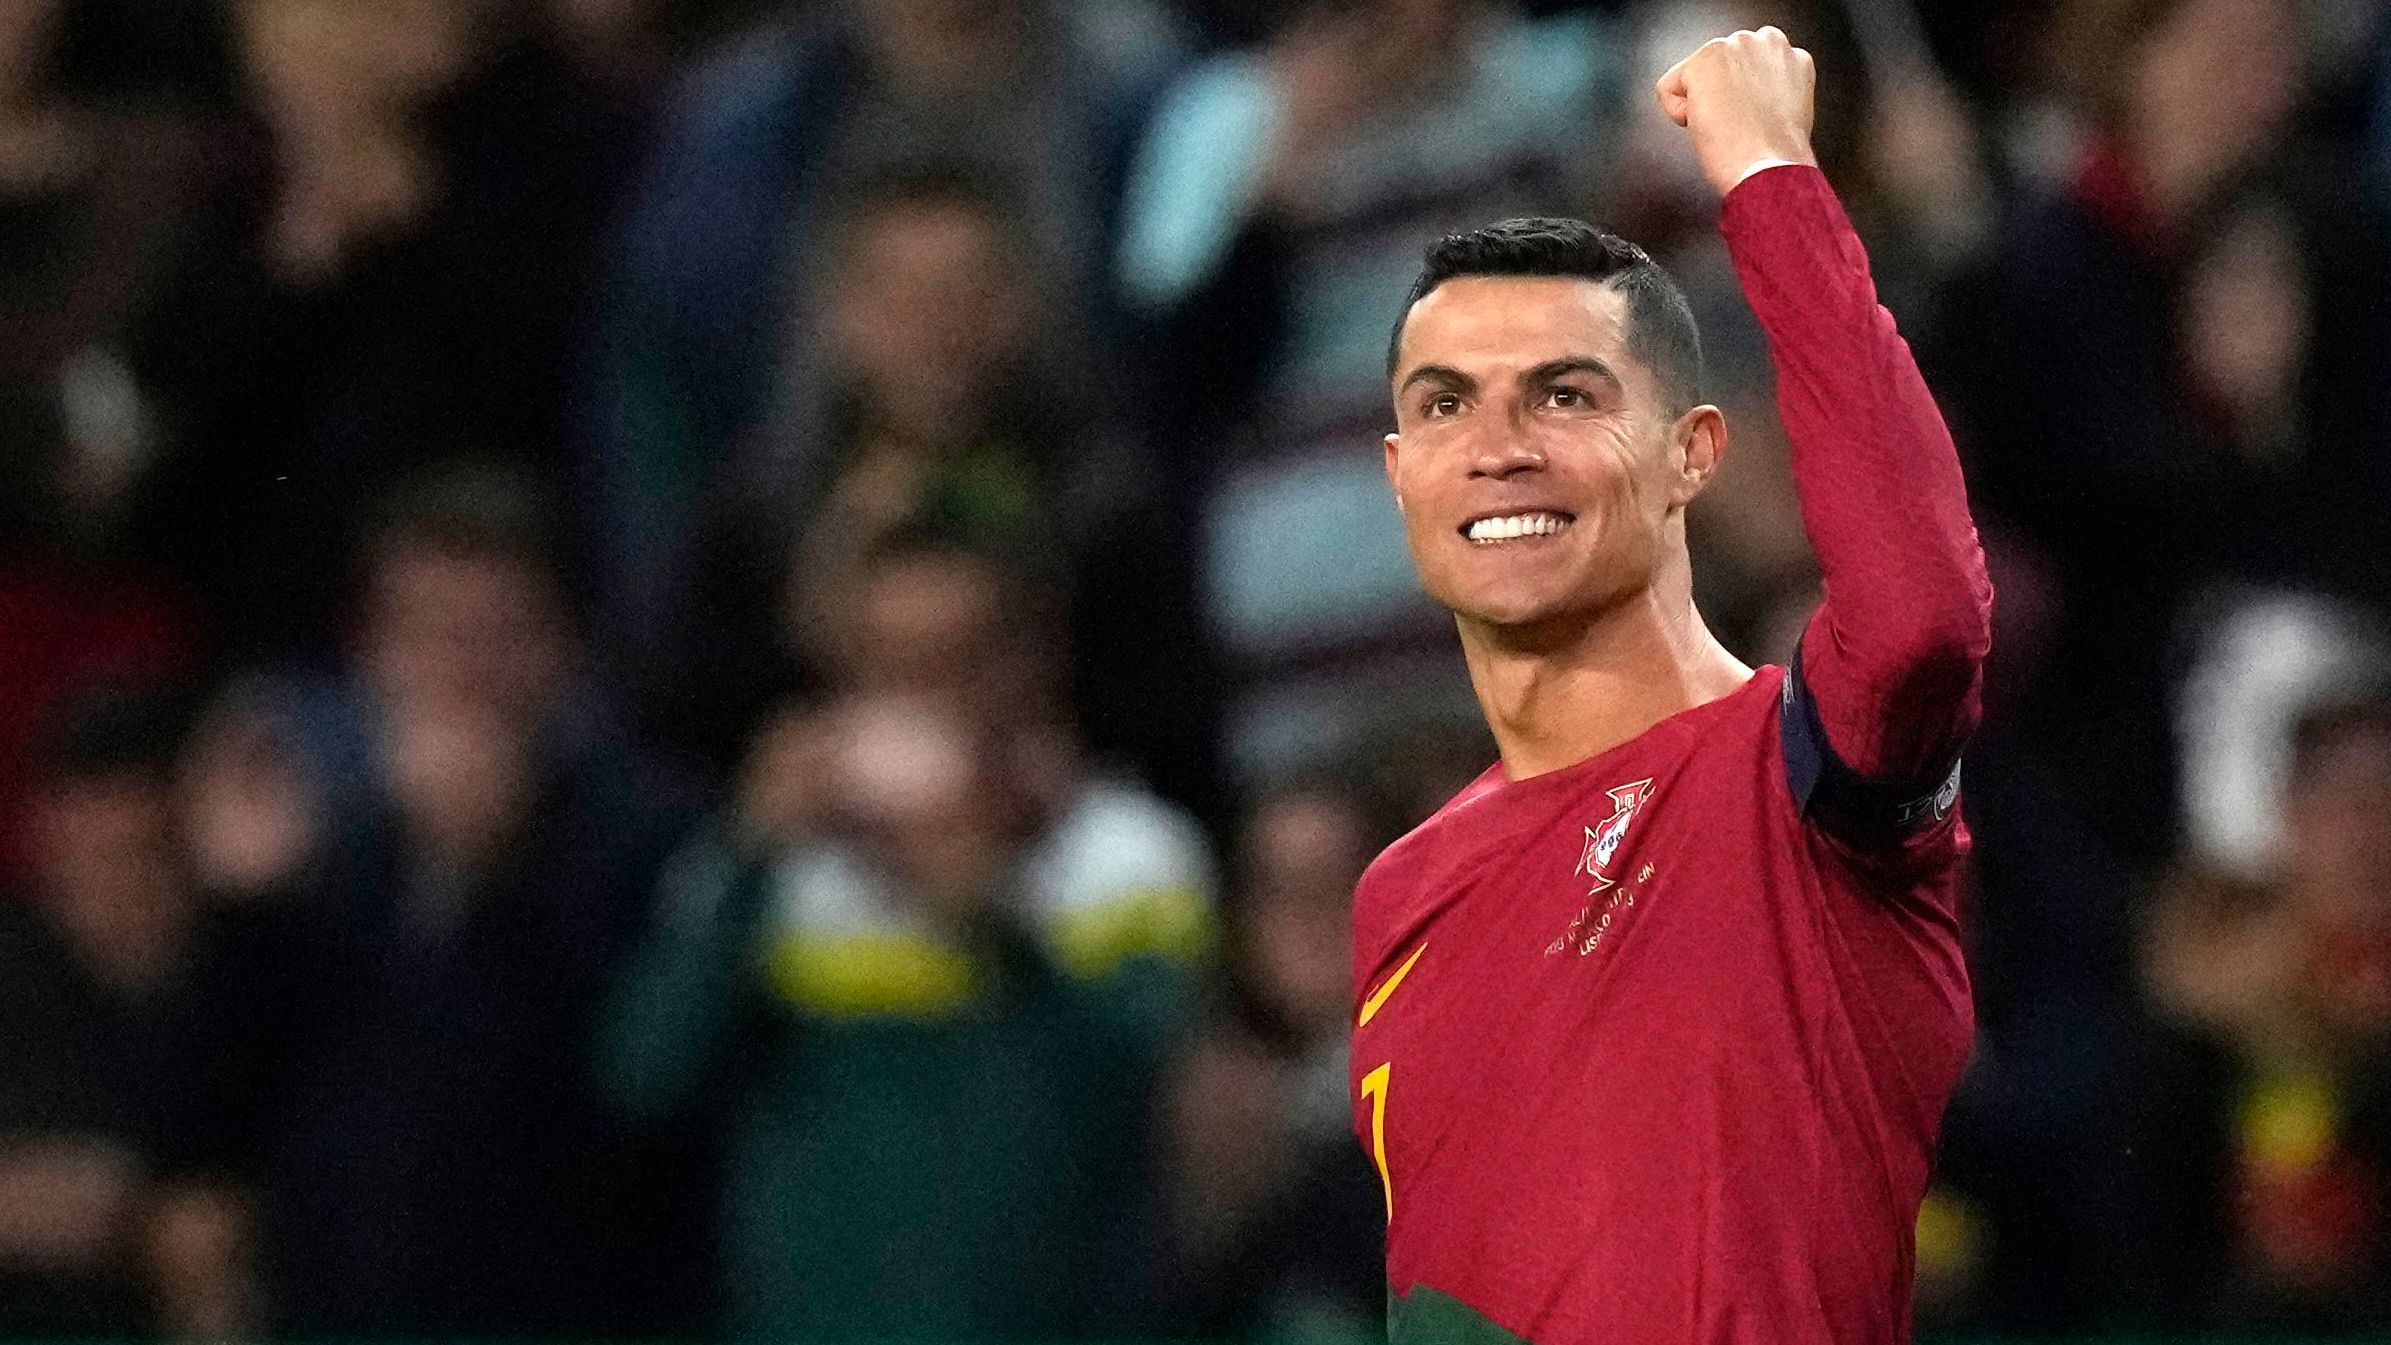 197 Länderspiele stehen nun in Ronaldos Bilanz - kein Spieler auf der Welt ist jemals öfter für eine Nationalmannschaft aufgelaufen.